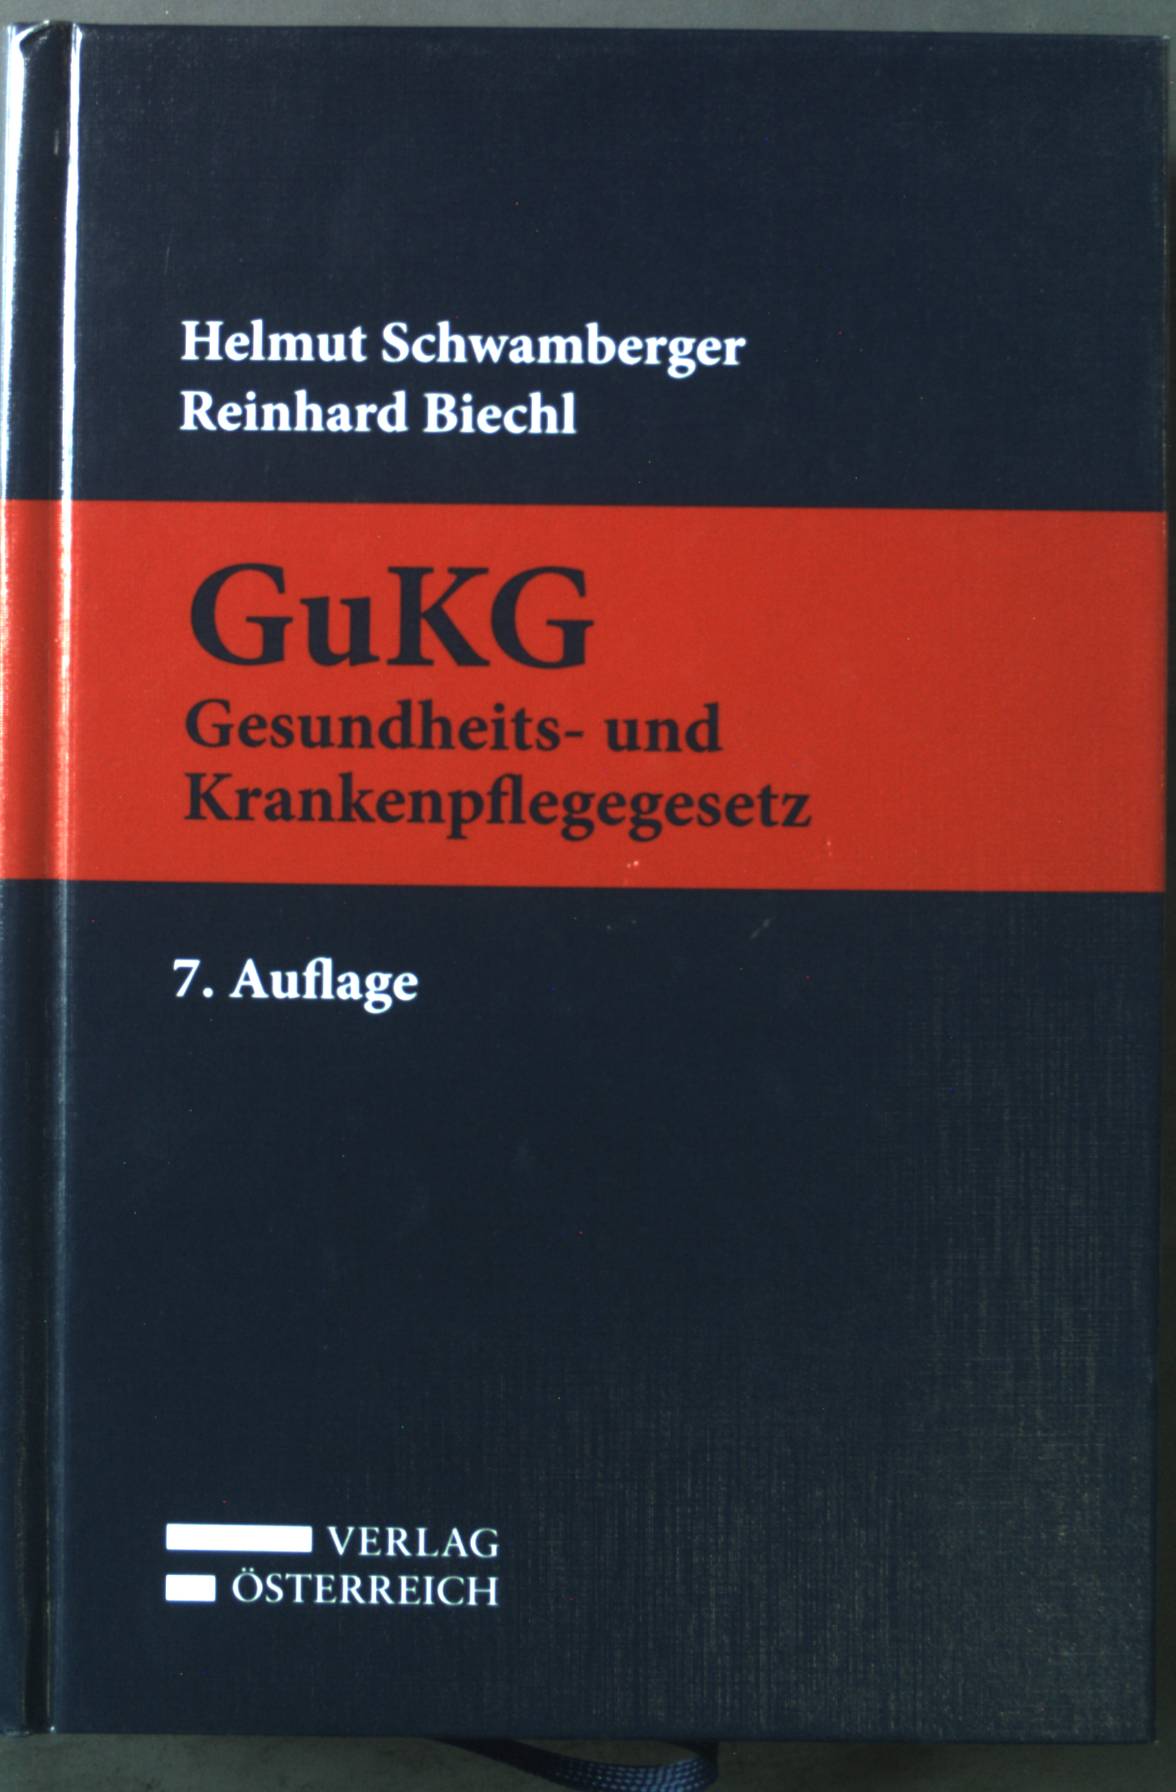 Gesundheits- und Krankenpflegegesetz - GuKG : Kurzkommentar. - Schwamberger, Helmut und Reinhard Biechl